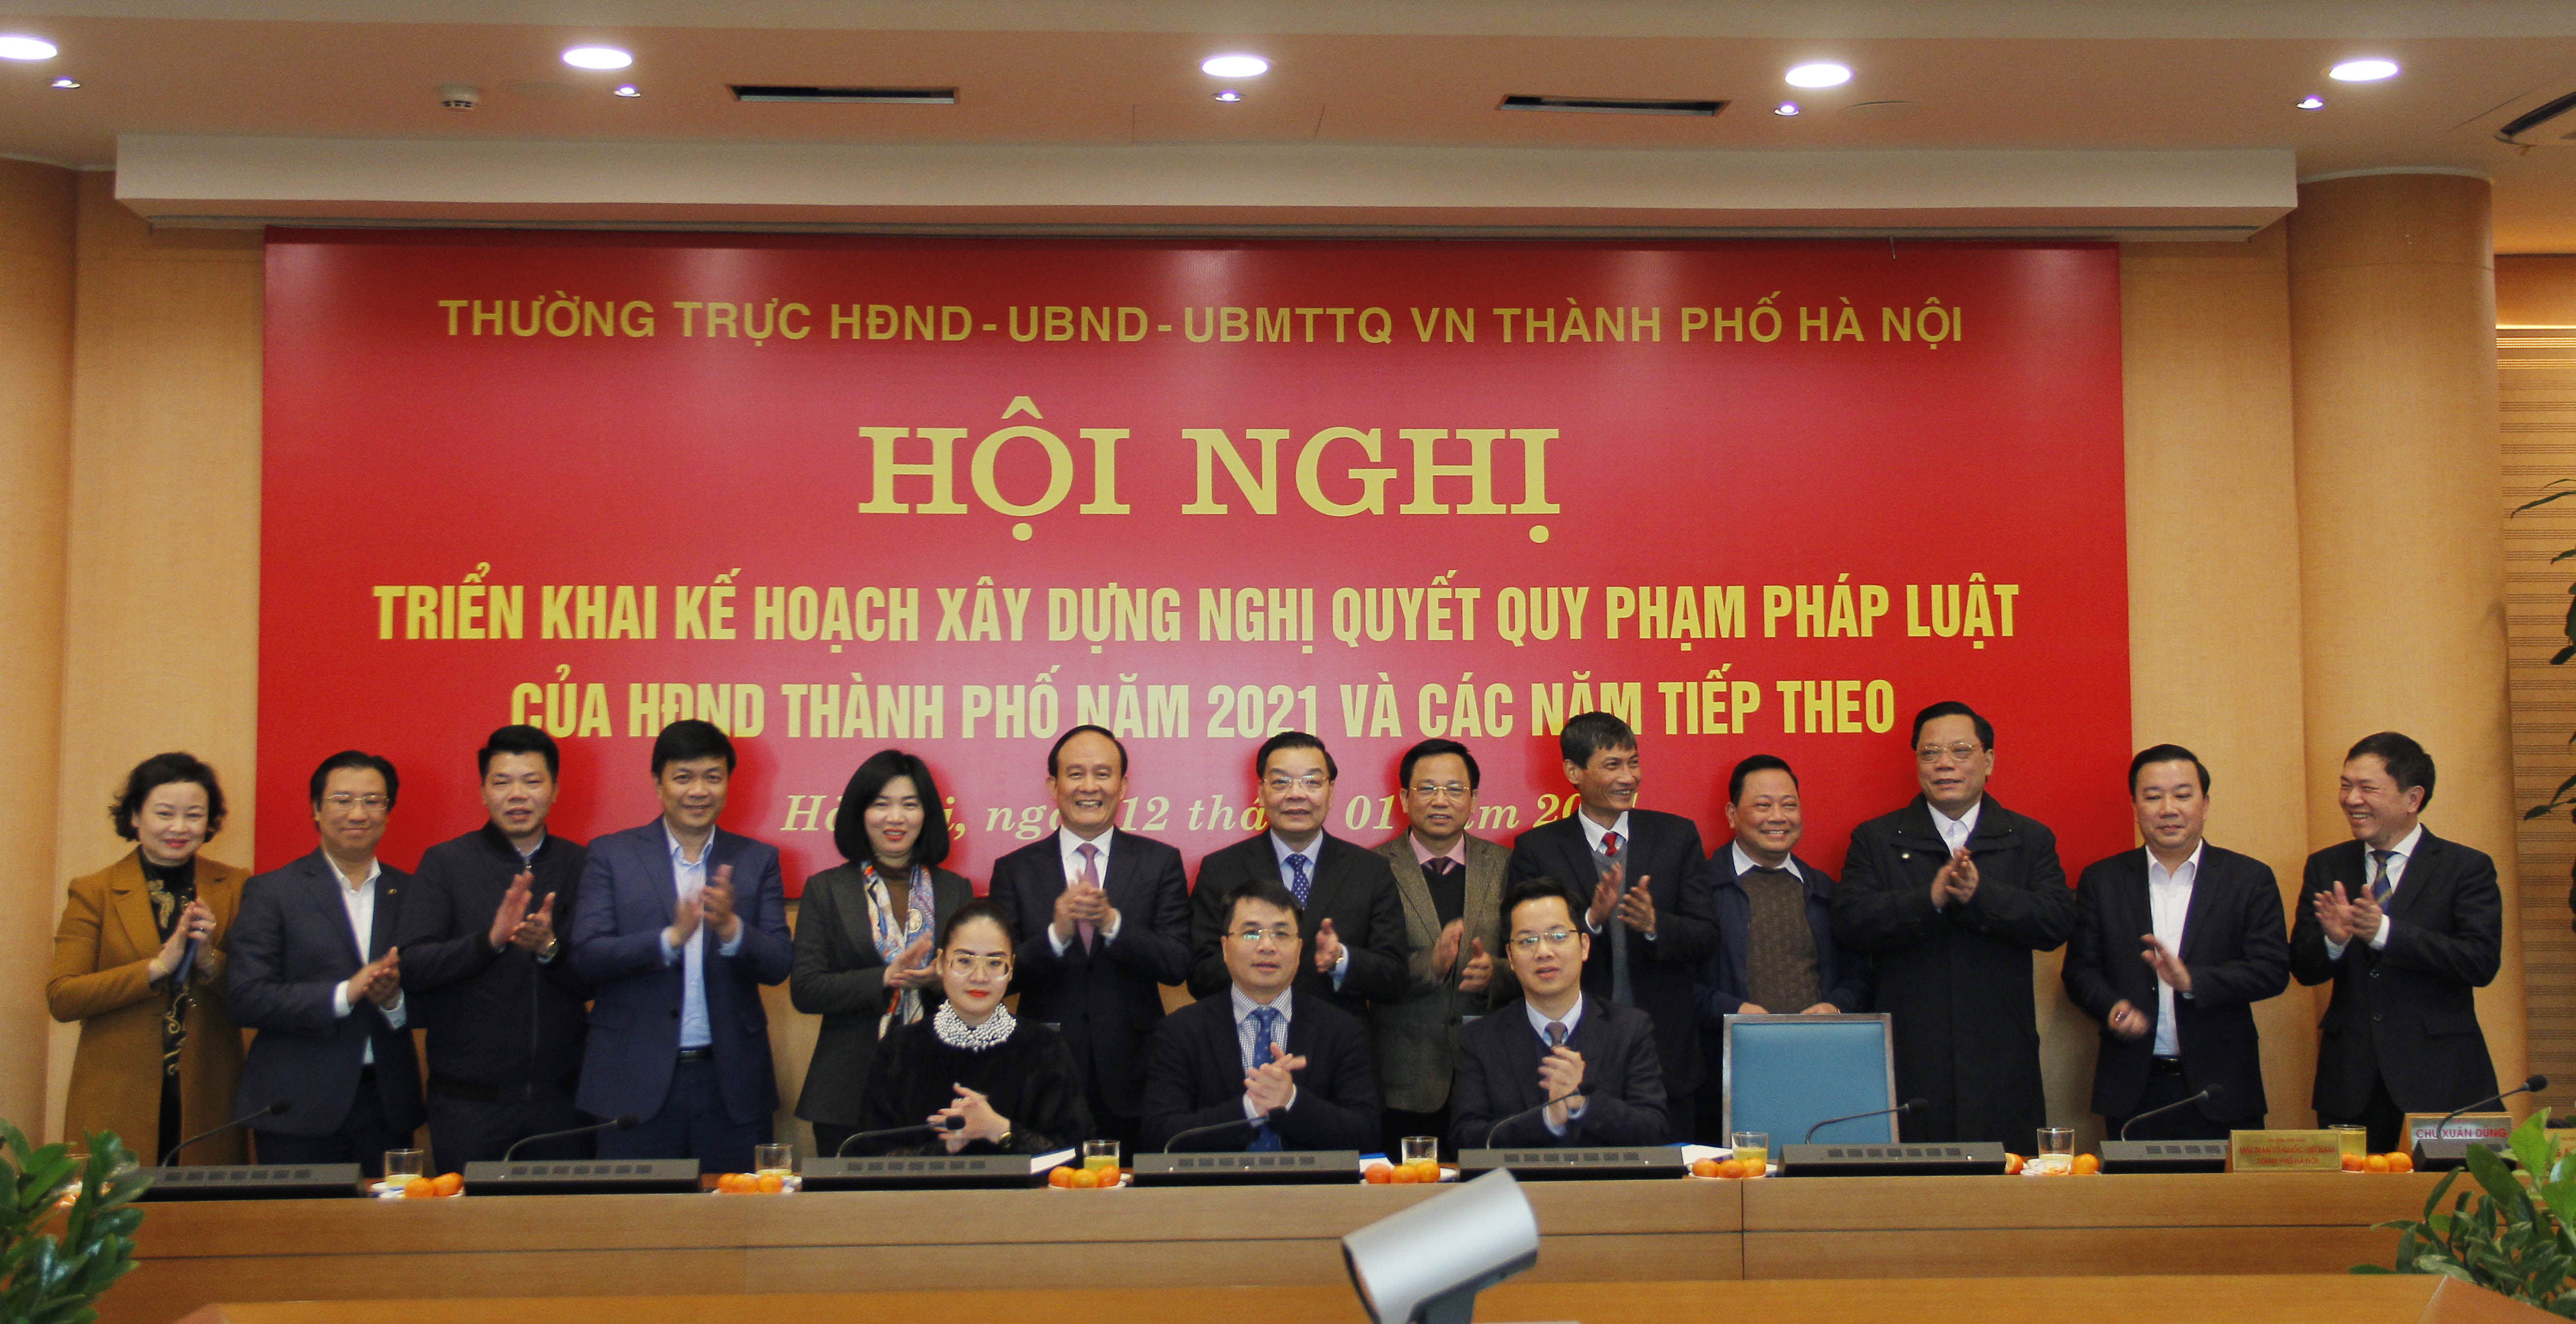 		Đại diện ba cơ quan HĐND-UBND-UBMTTQ Việt Nam thành phố đã ký thông báo kết luận Hội nghị